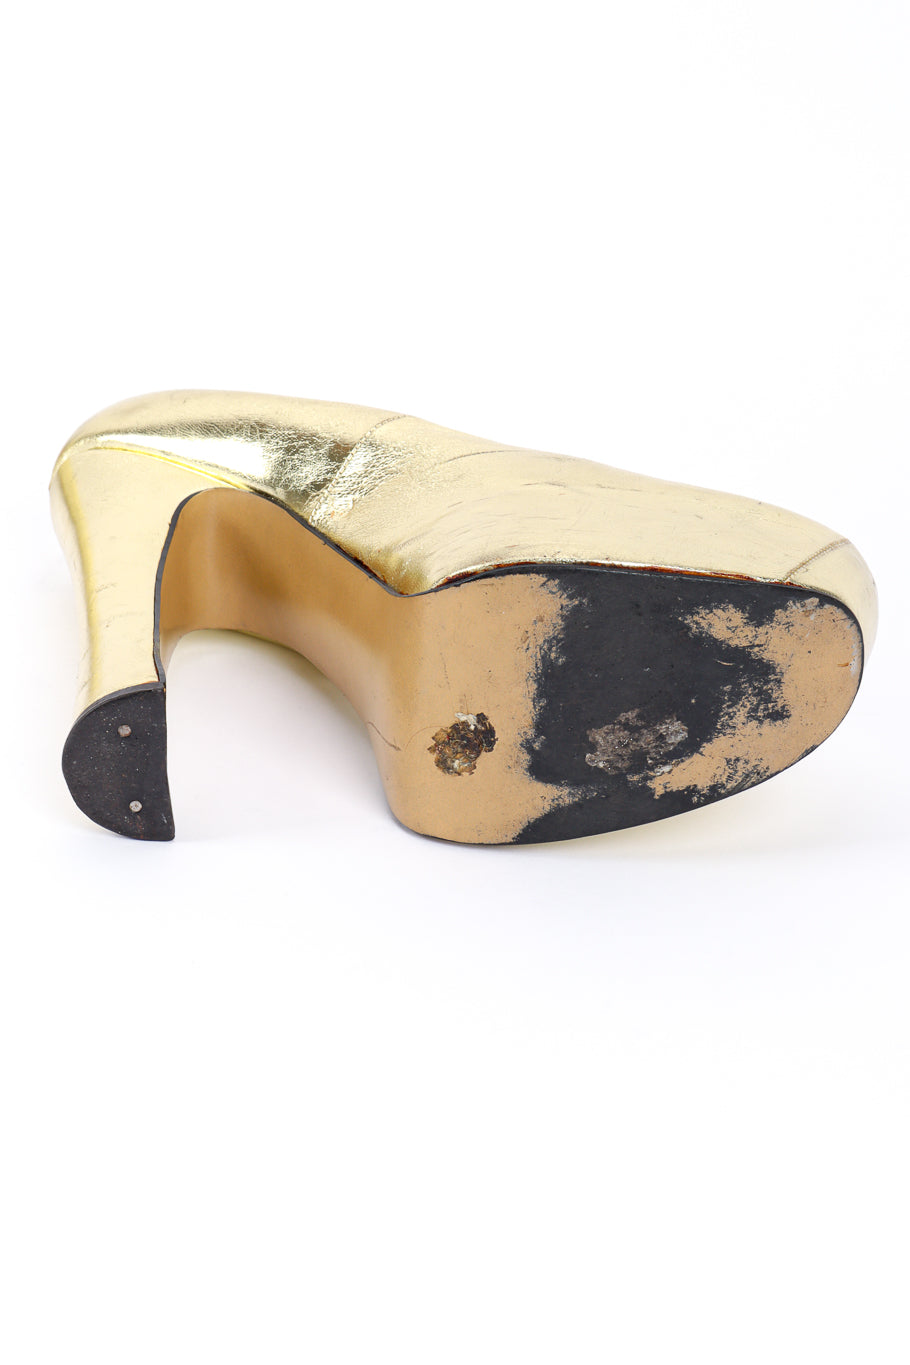 Vintage Vivienne Westwood 1993 F/W Metallic Gold Elevated Court Shoe left shoe outsole @recessla